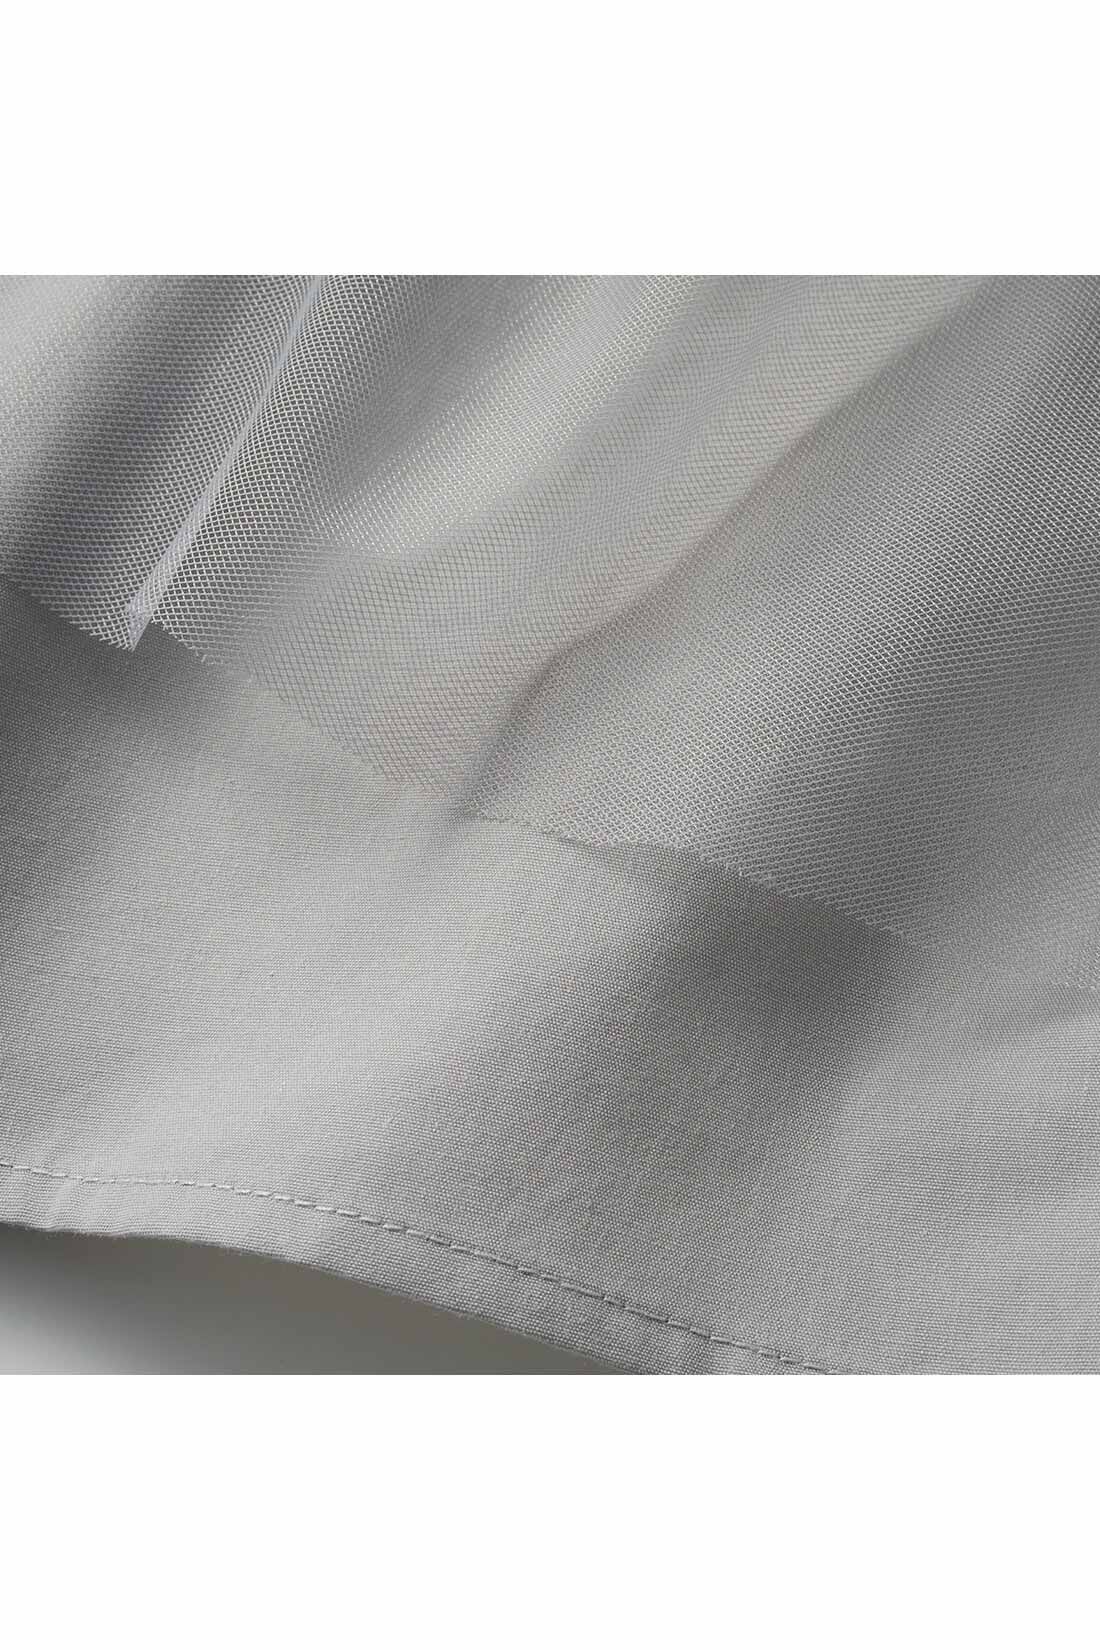 Live in  comfort|リブ イン コンフォート いつものコーデを格上げする チュールティアードスカート 〈ブラック〉|ほどよく張りのある繊細なチュールに、透け感が気になりにくい布はく素材の裏地を重ねました。